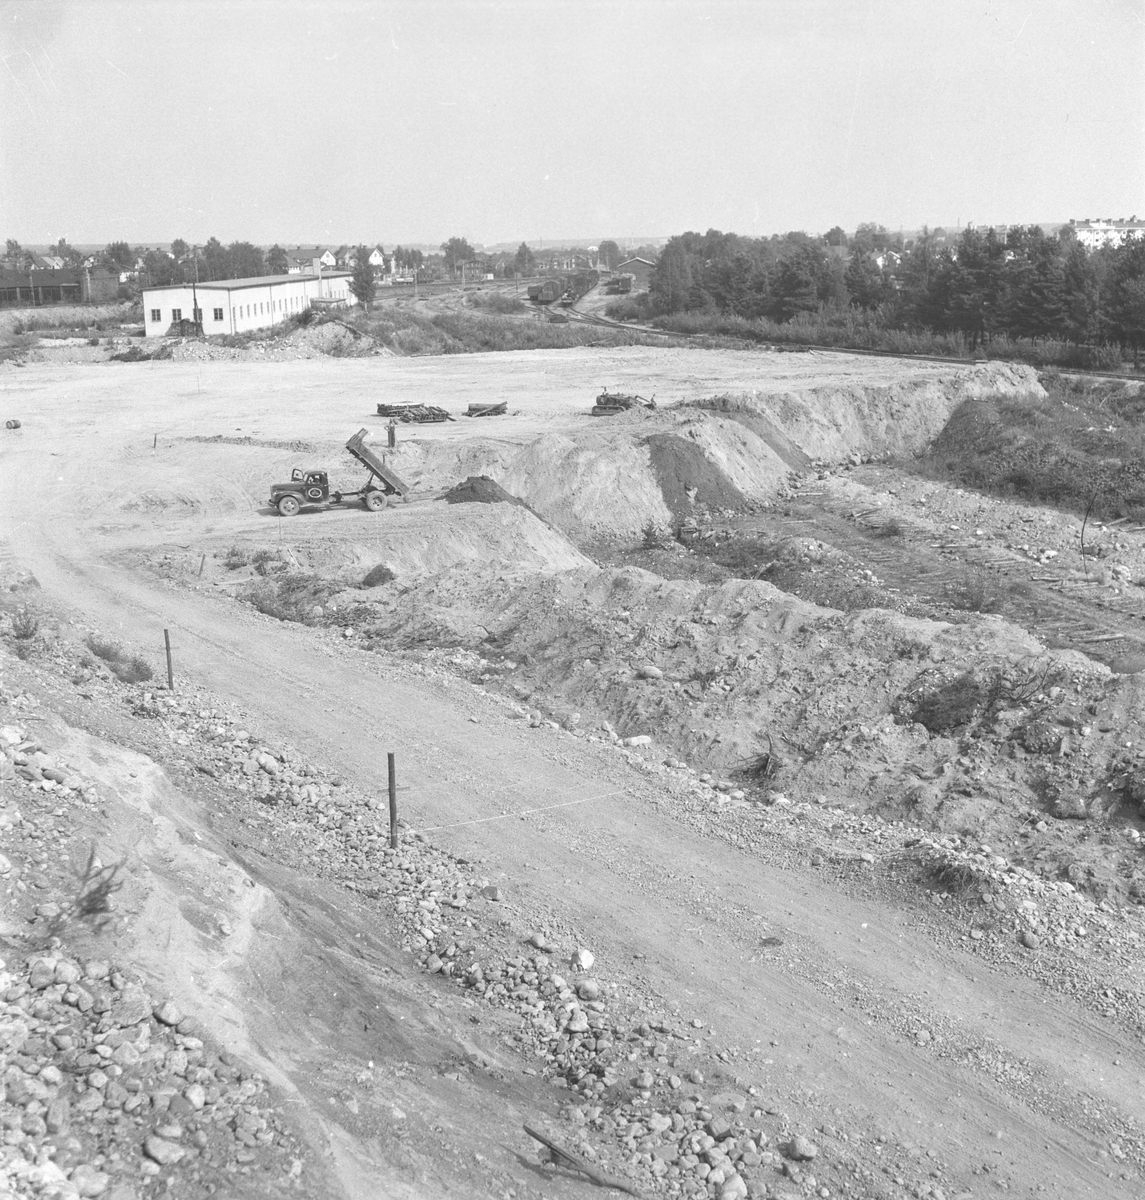 Sätraåsens grusgrop igenfylles. 14 augusti 1953.
SJ:s nya förrådsplats.